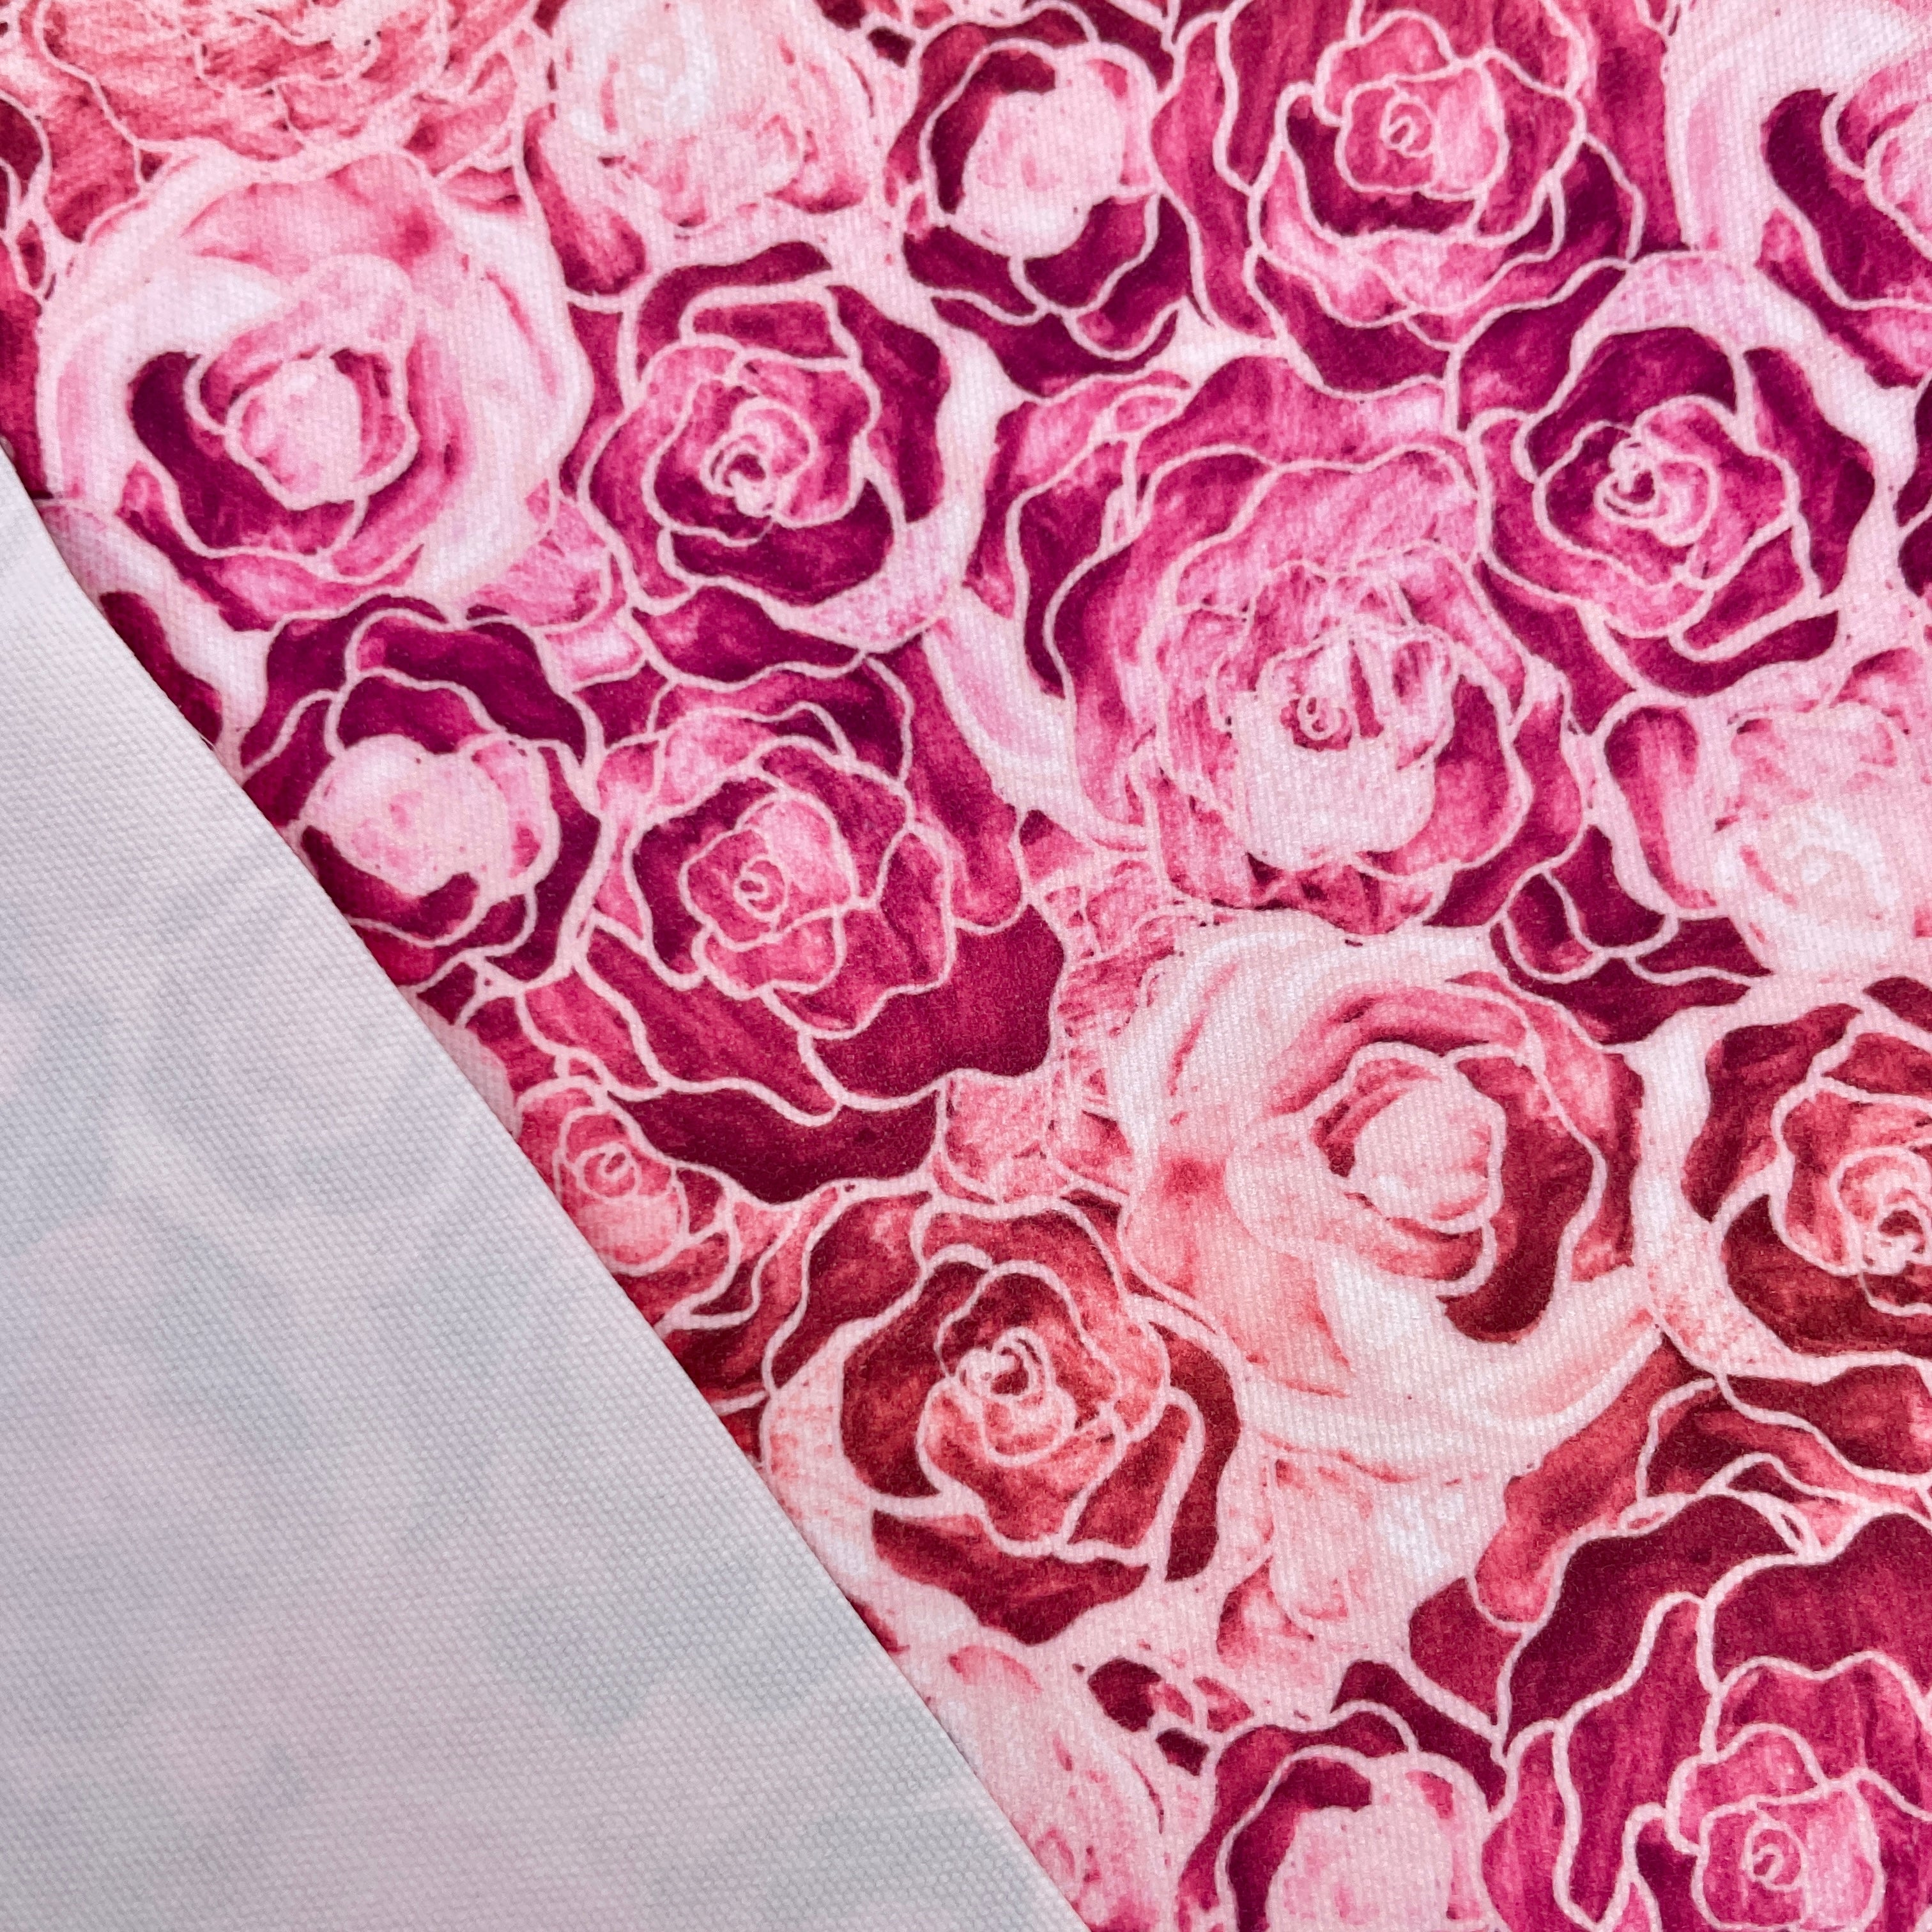 Jouet presse-fleurs - Rose/Blush/Sable mouvant